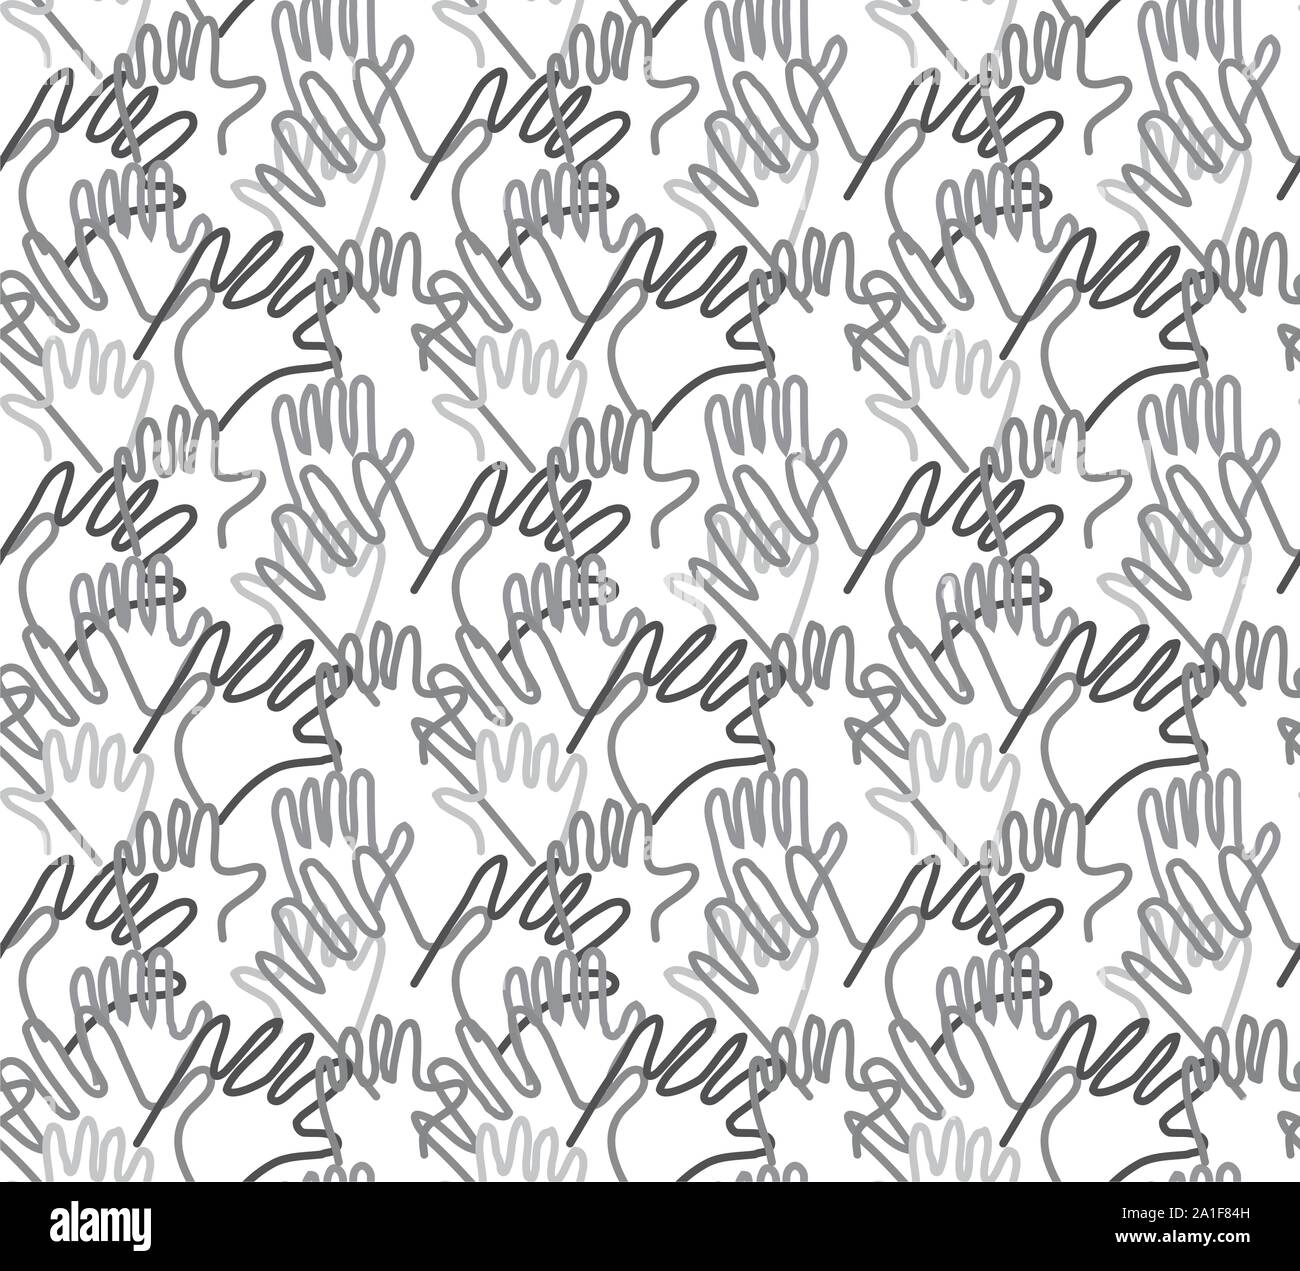 Les armes à la main les lignes de tendance semaless palms gris. Noir et blanc illustration vecteur EPS8 Illustration de Vecteur